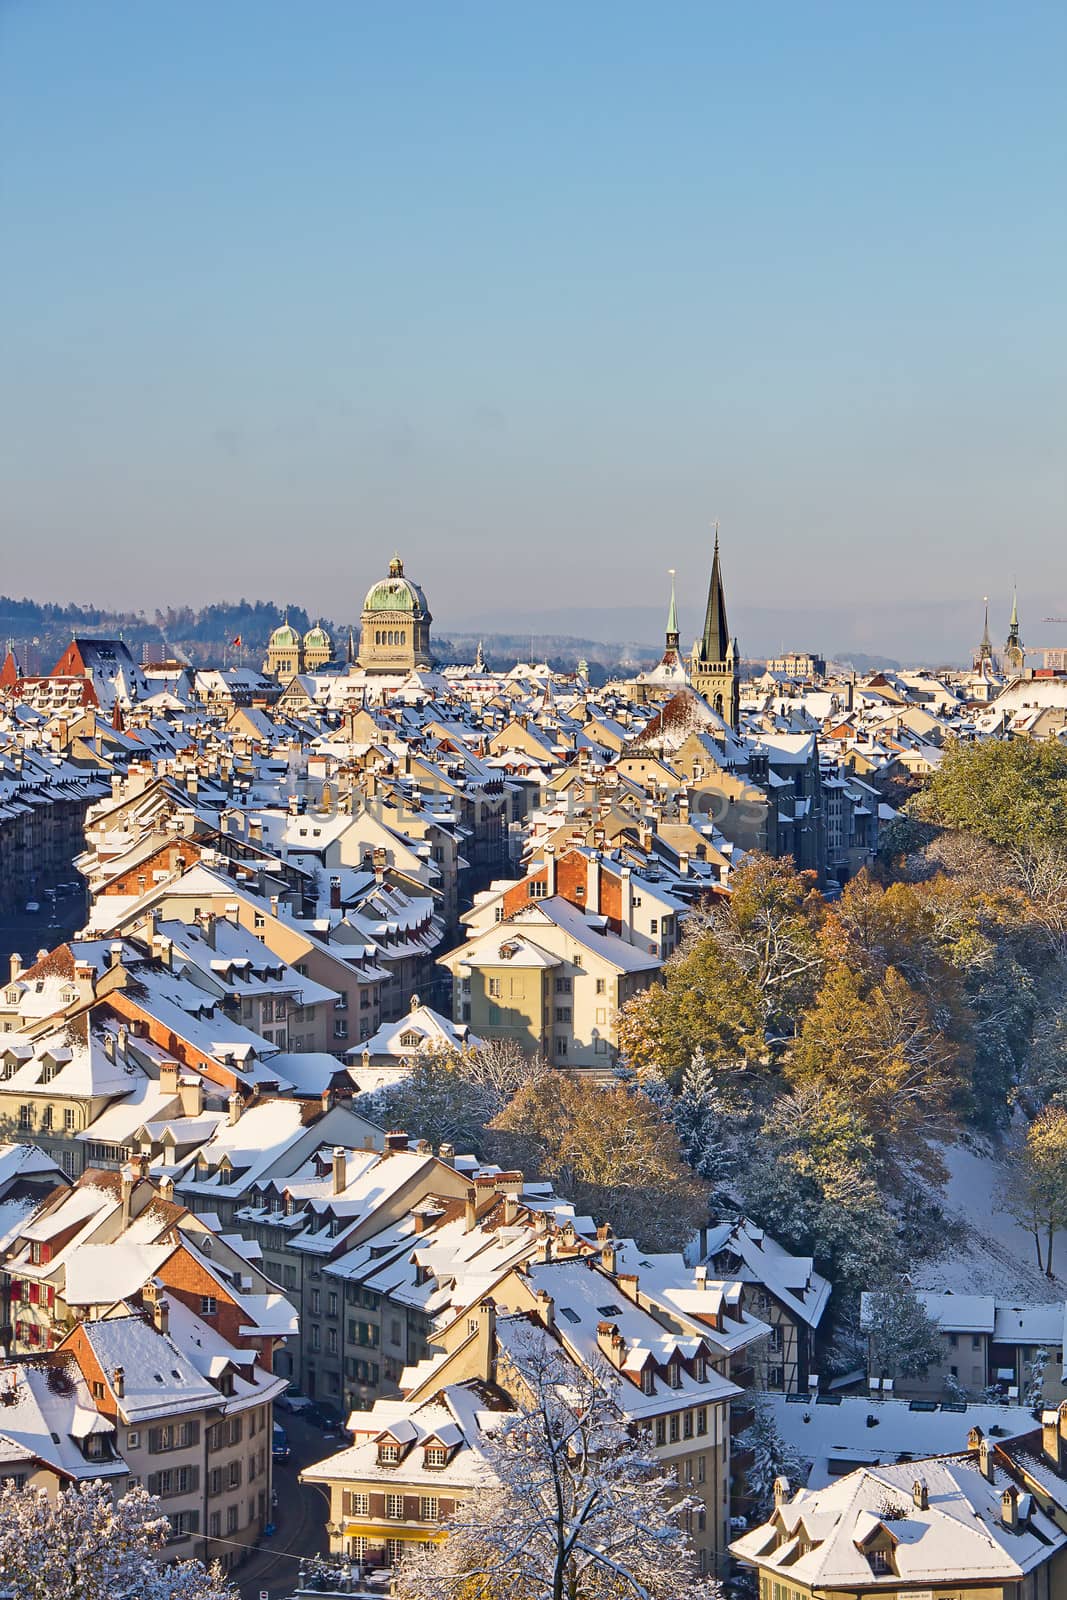 Bern in winter by swisshippo